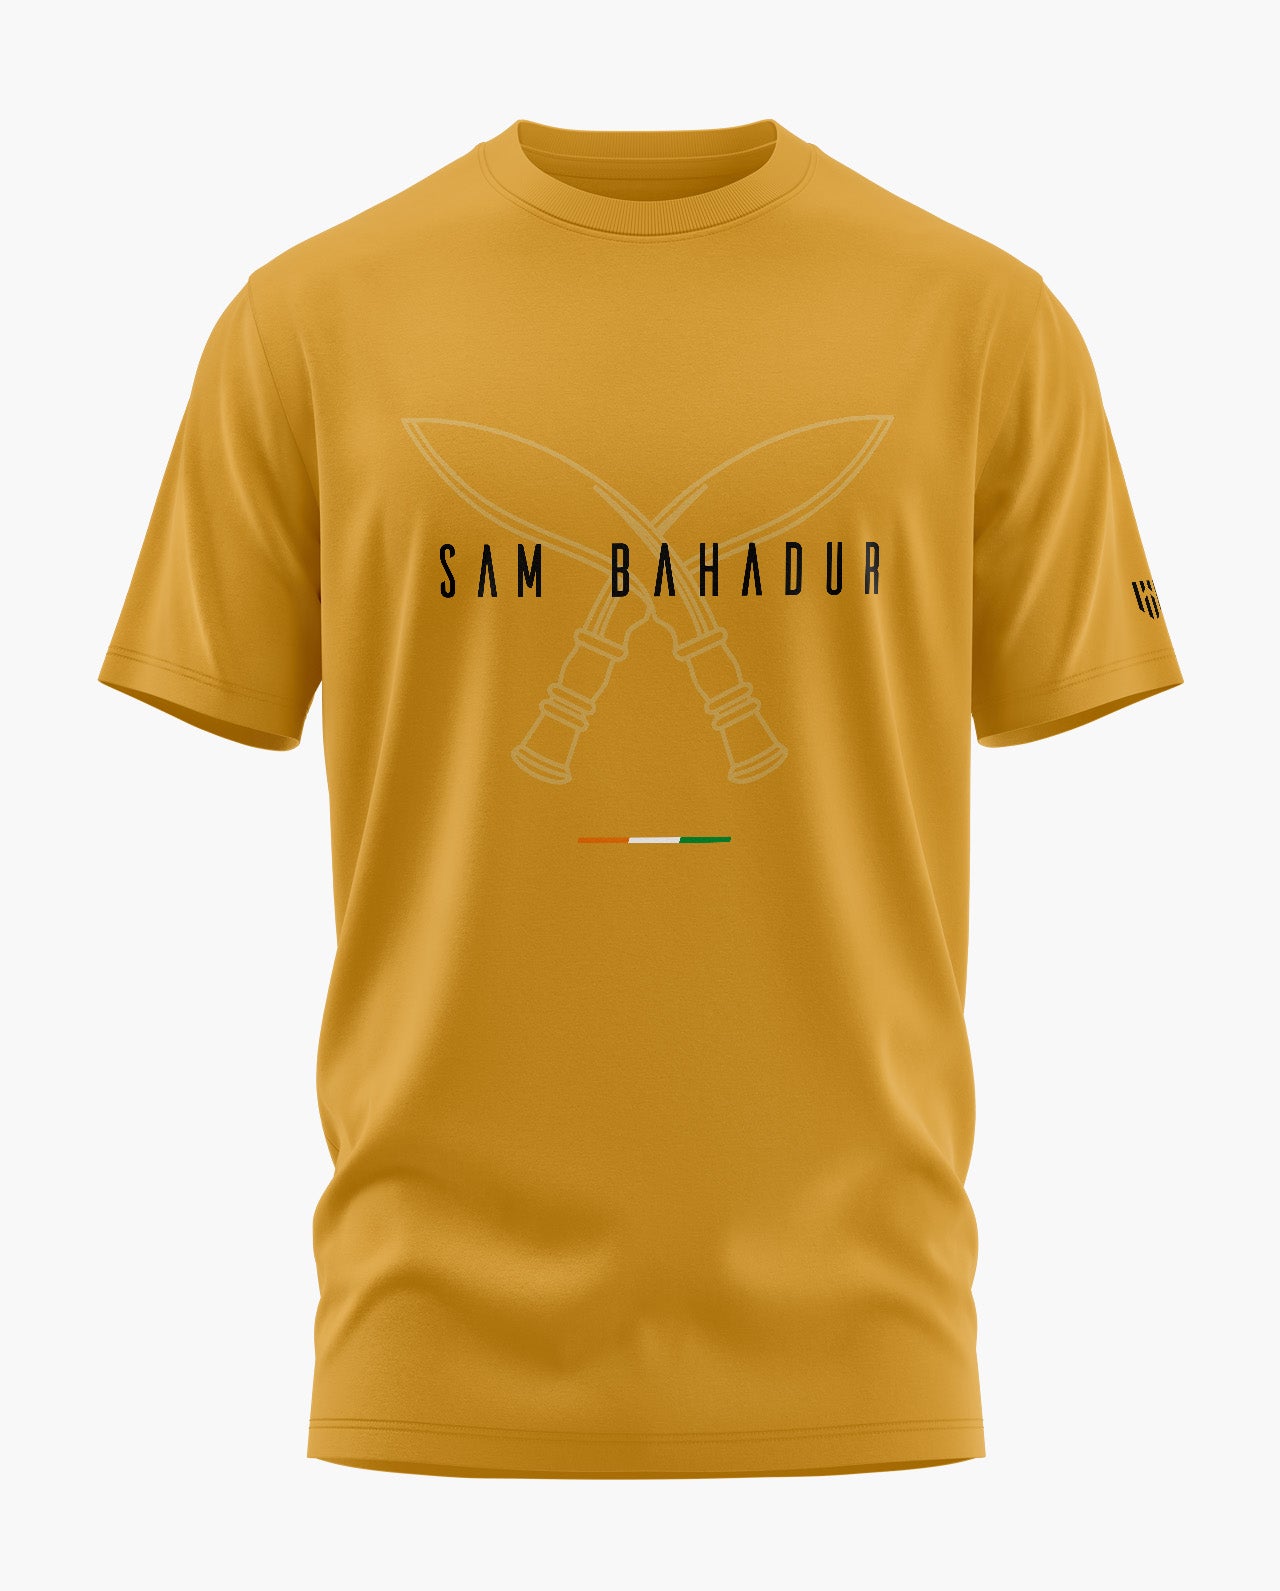 SAM BAHADUR GORKHA T-Shirt